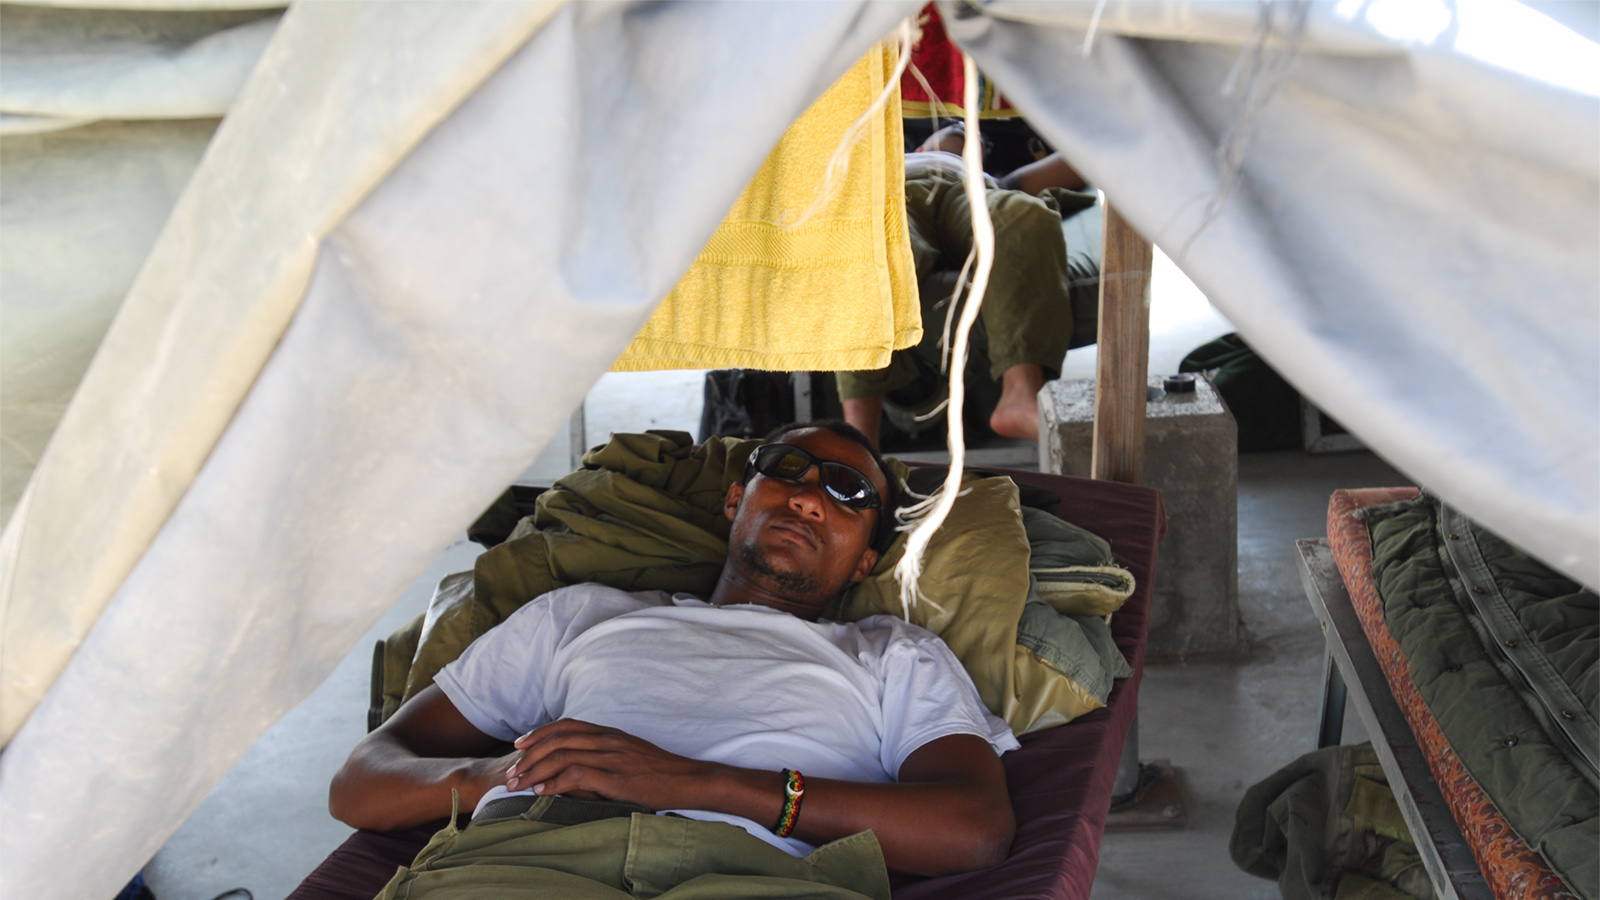 חייל מילואים ישן באוהל. למצולם אין קשר לכתבה (צילום ארכיון: גיל יערי/ פלאש 90).